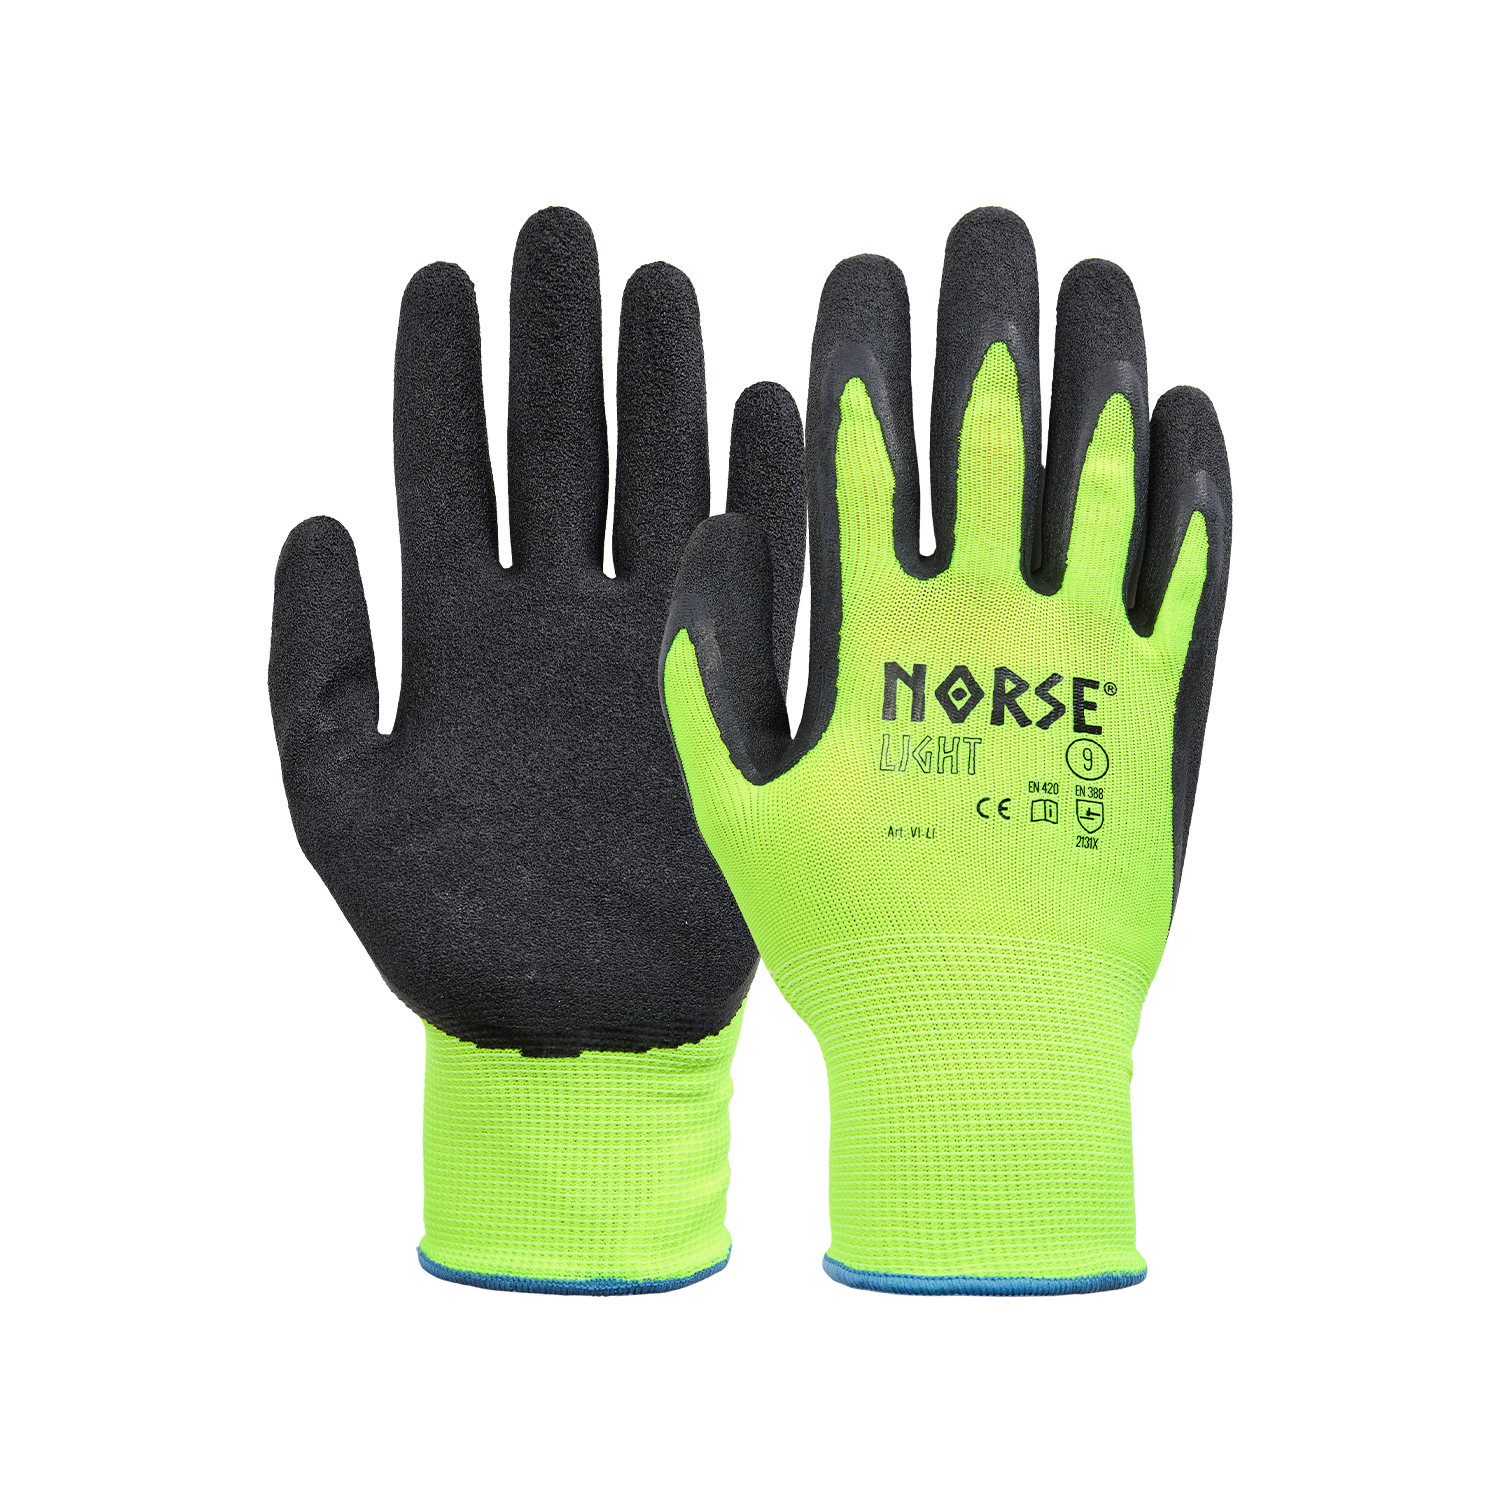 NORSE Light assembly gloves size 8